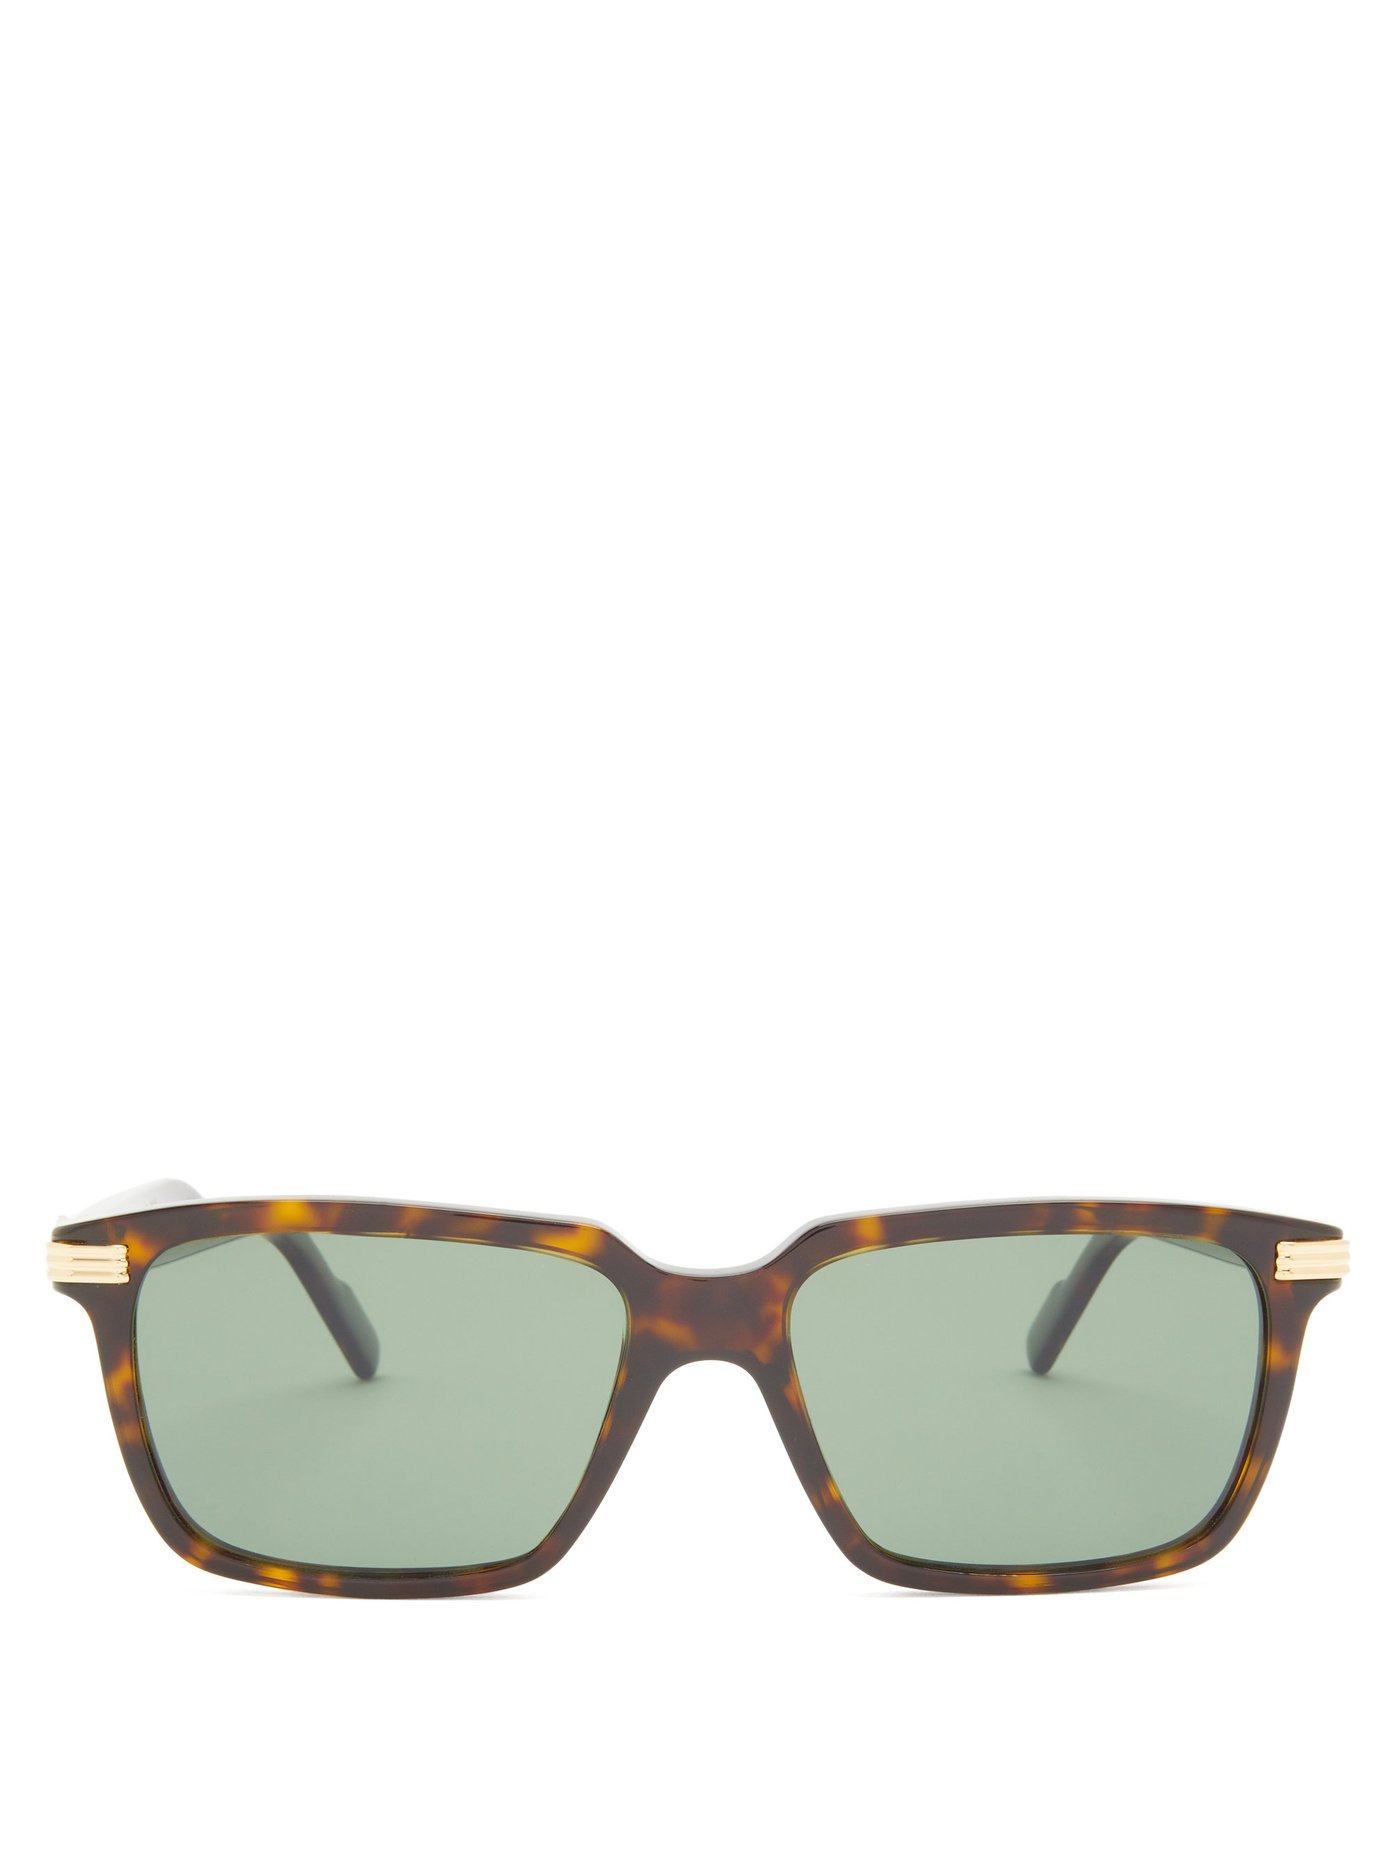 C Décor rectangular acetate sunglasses 